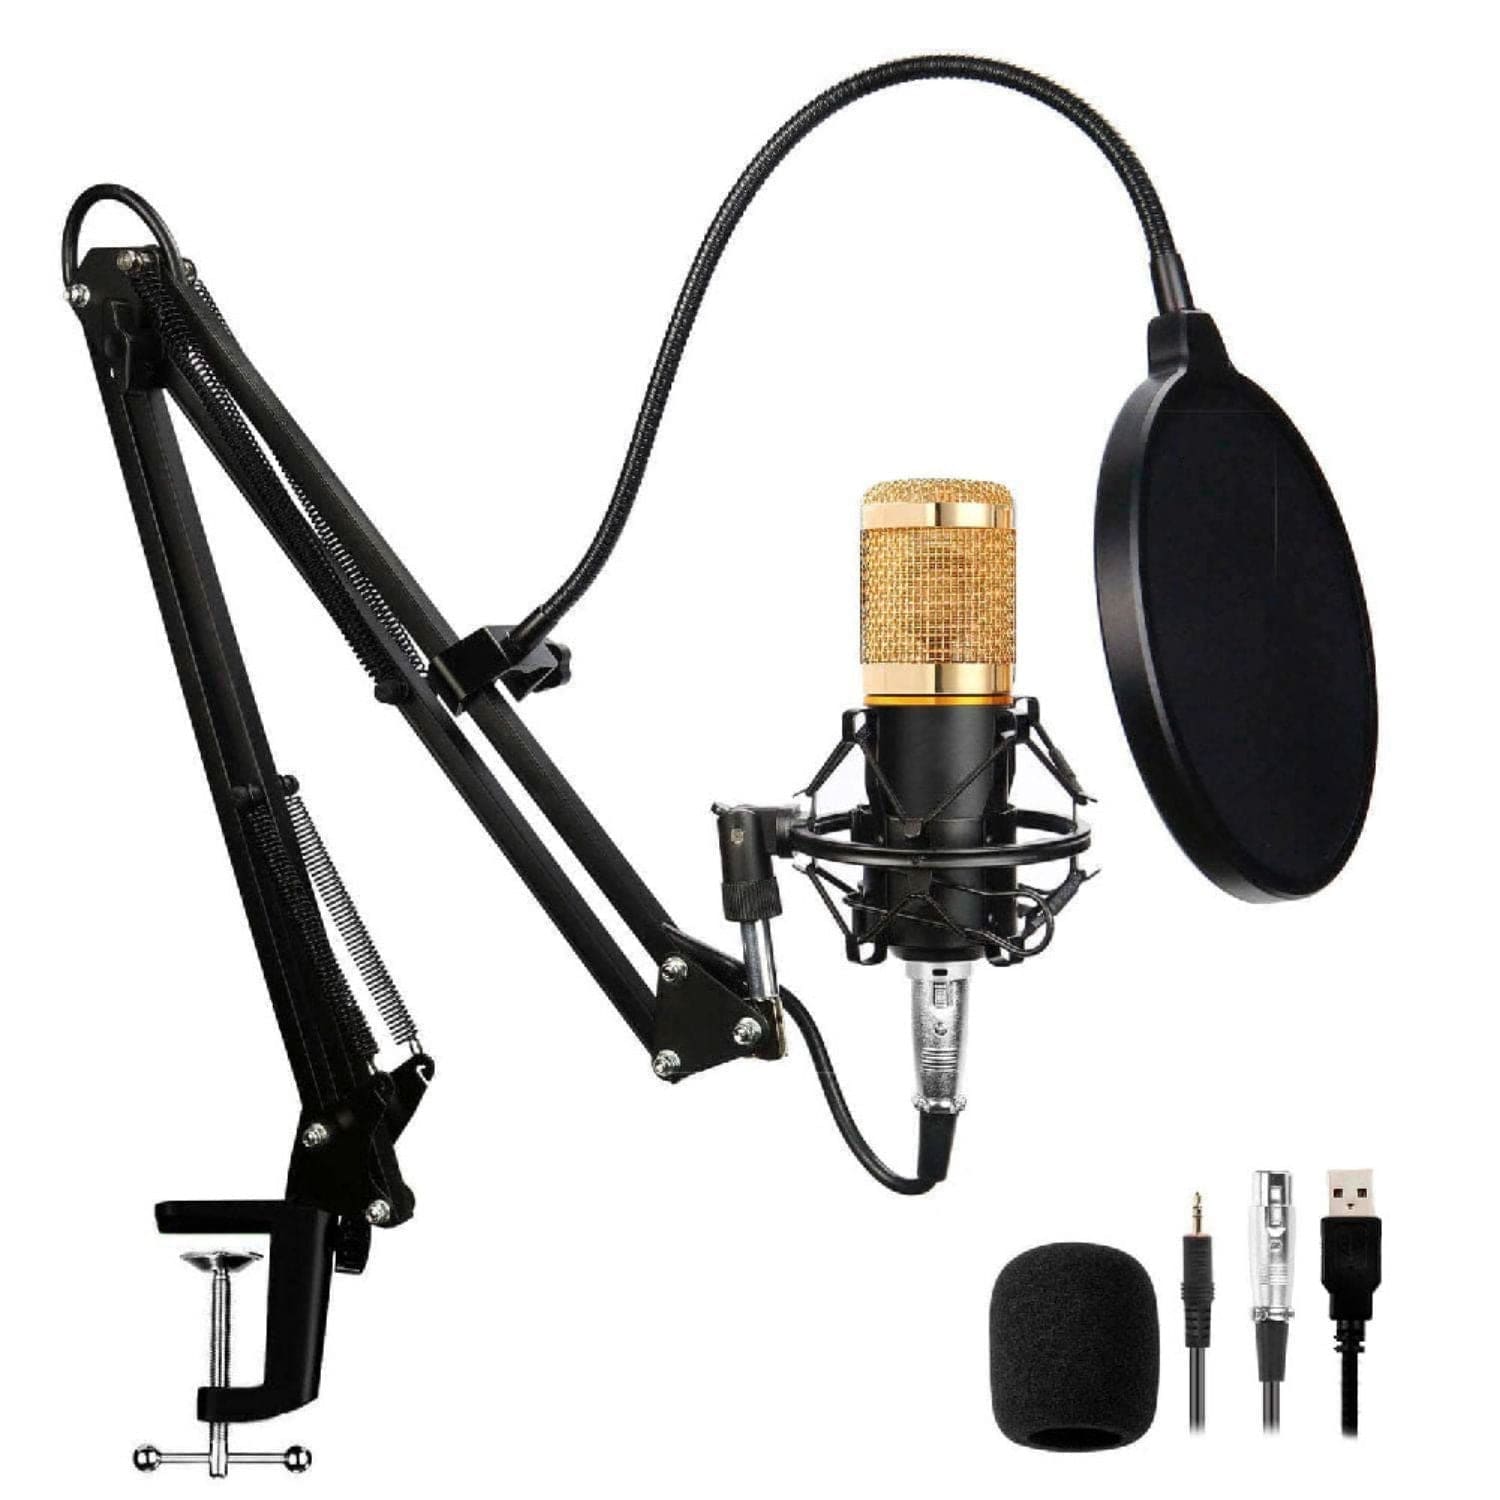 DJI Mic Sistema de micrófono inalámbrico digital compacto para 2  personas/grabadora para cámara y teléfono inteligente, 2.4 GHz con 2  micrófonos